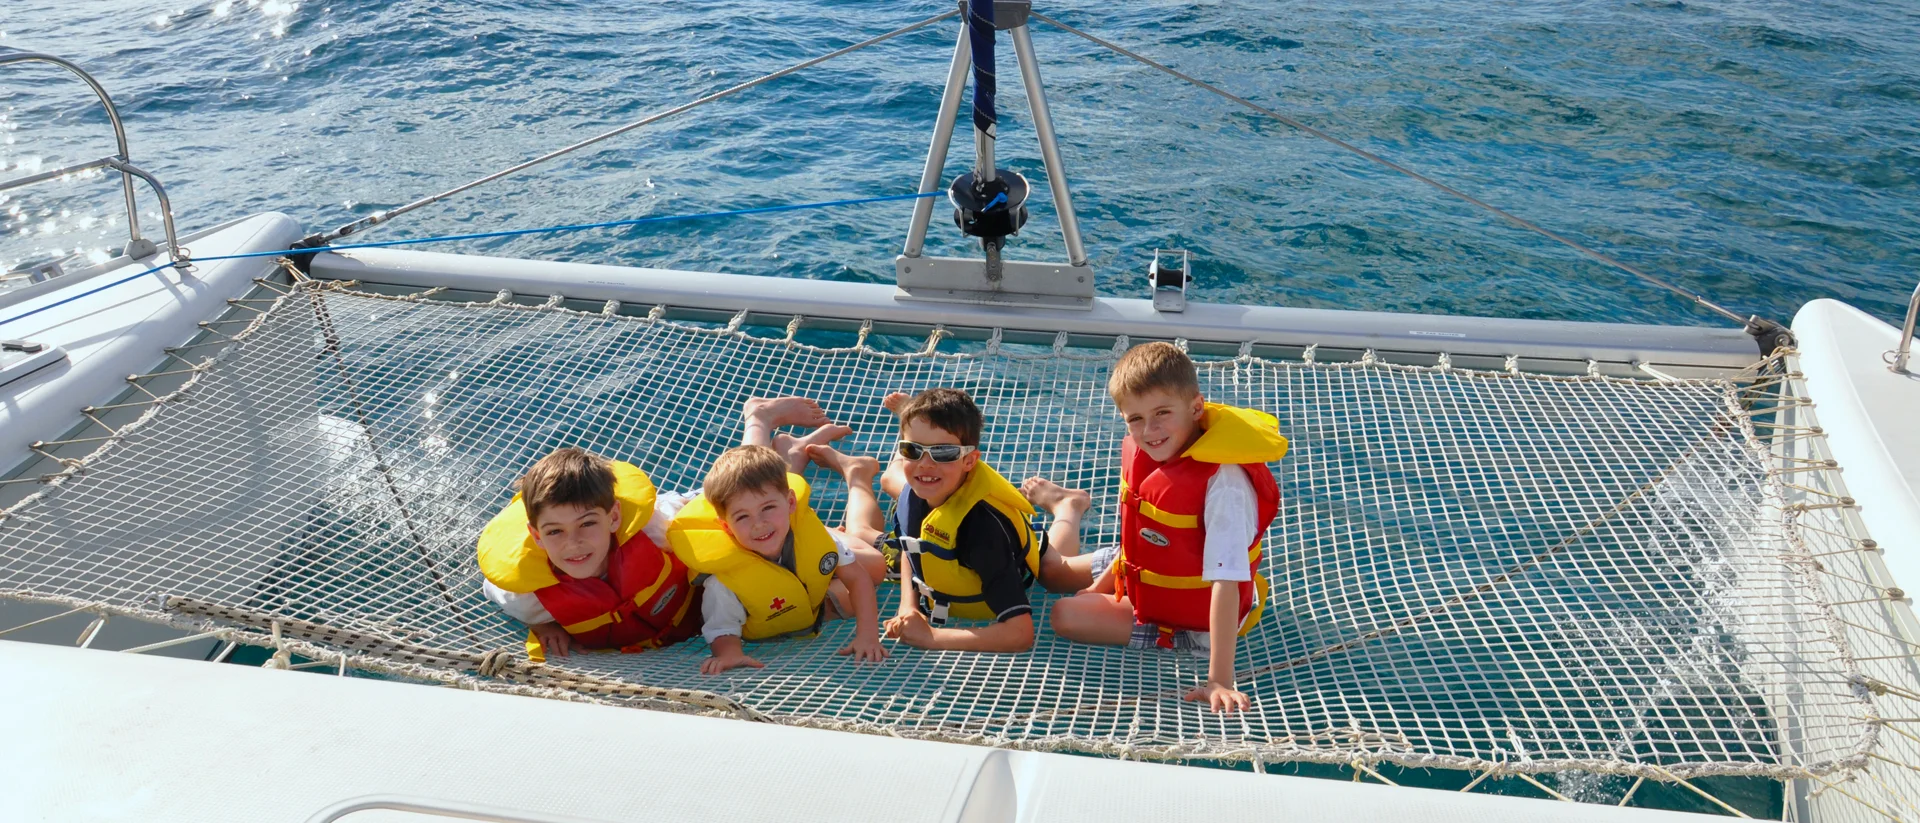 Bambini con occhiali da sole e giubbotti di salvataggio che si godono le vacanze in catamarano